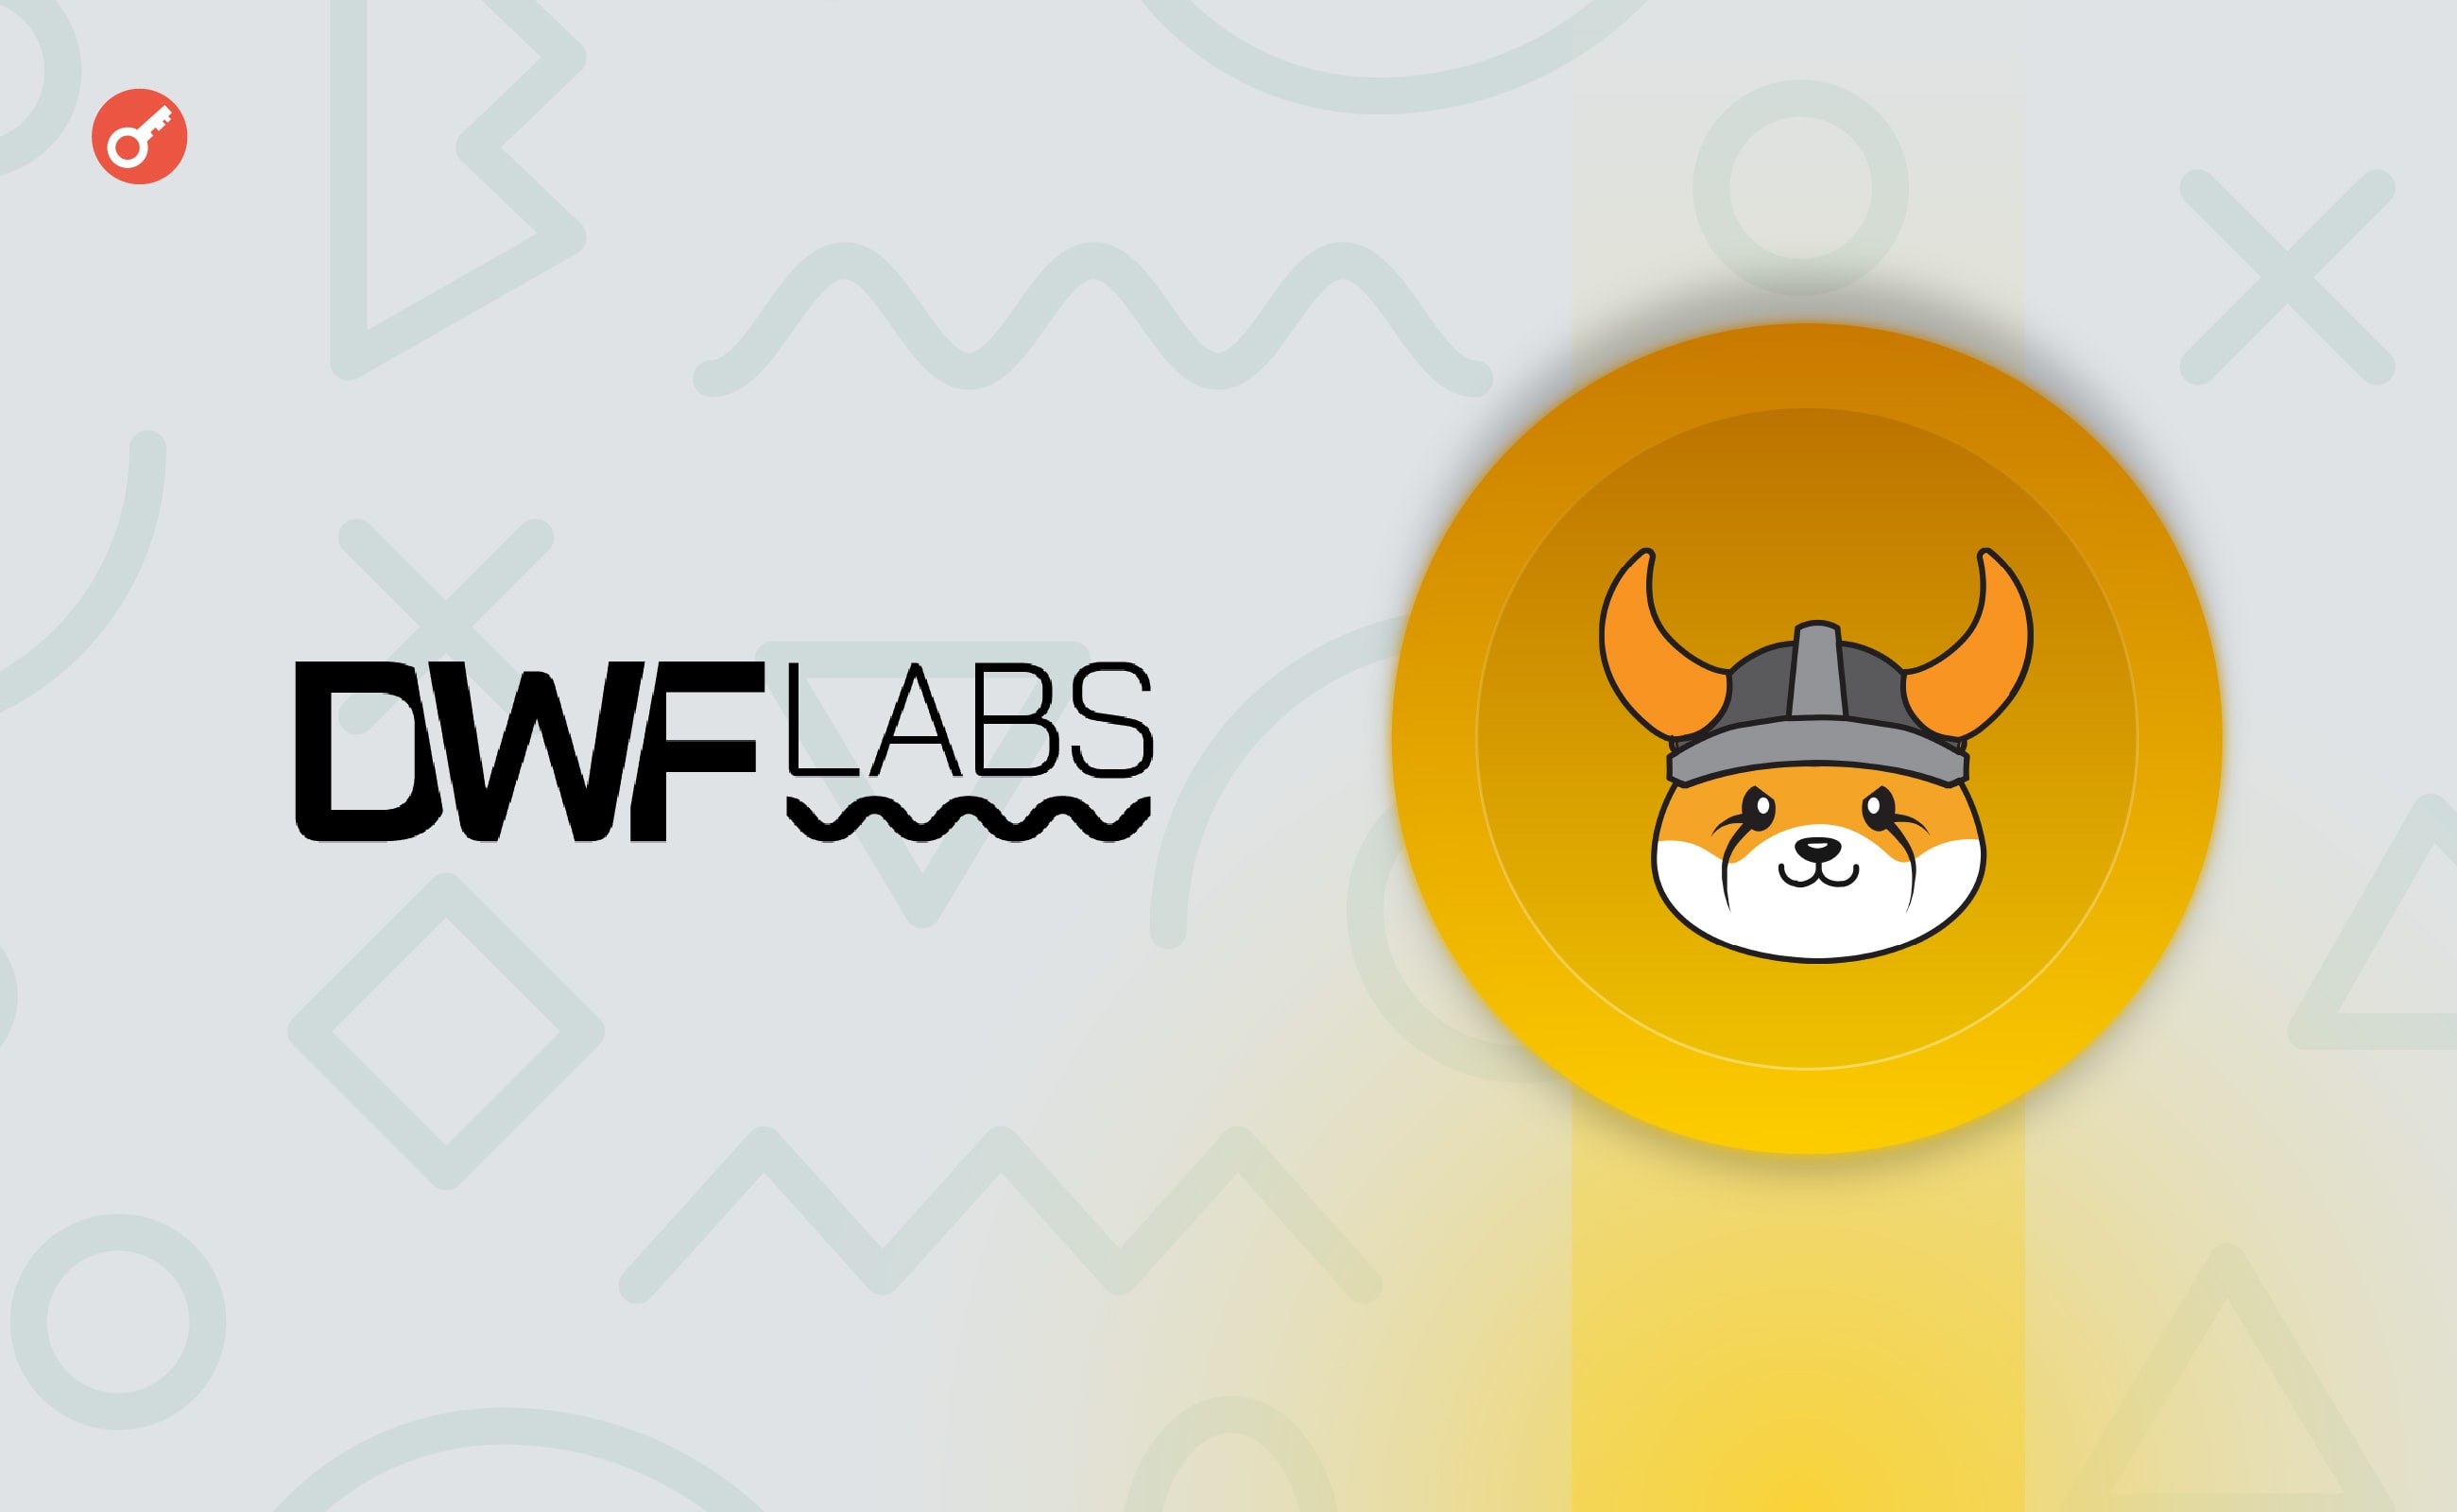 DWF Labs kupi tokeny FLOKI za 10 milionów dolarów. Główny kolaż wiadomości.